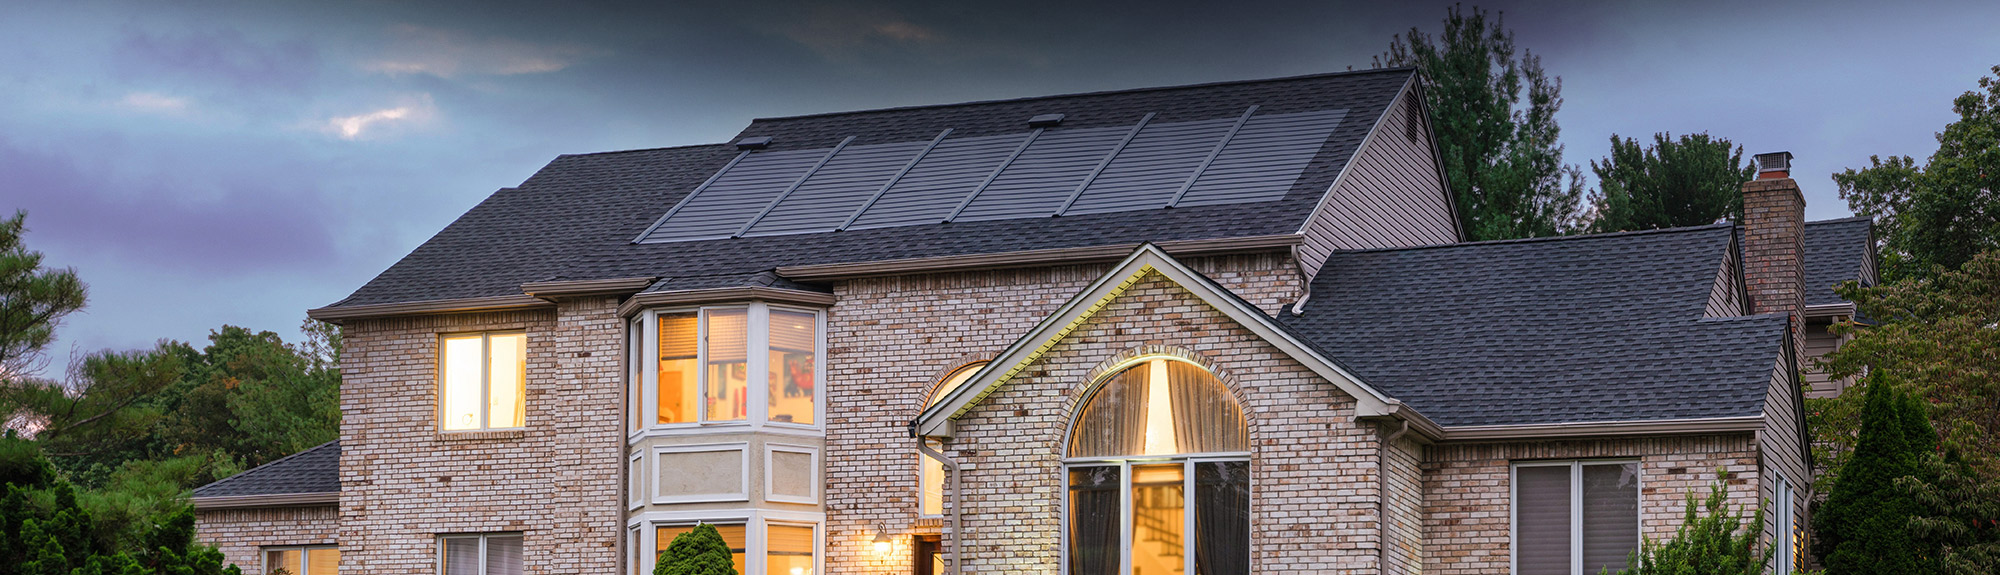 FREE Solar Roof Estimate